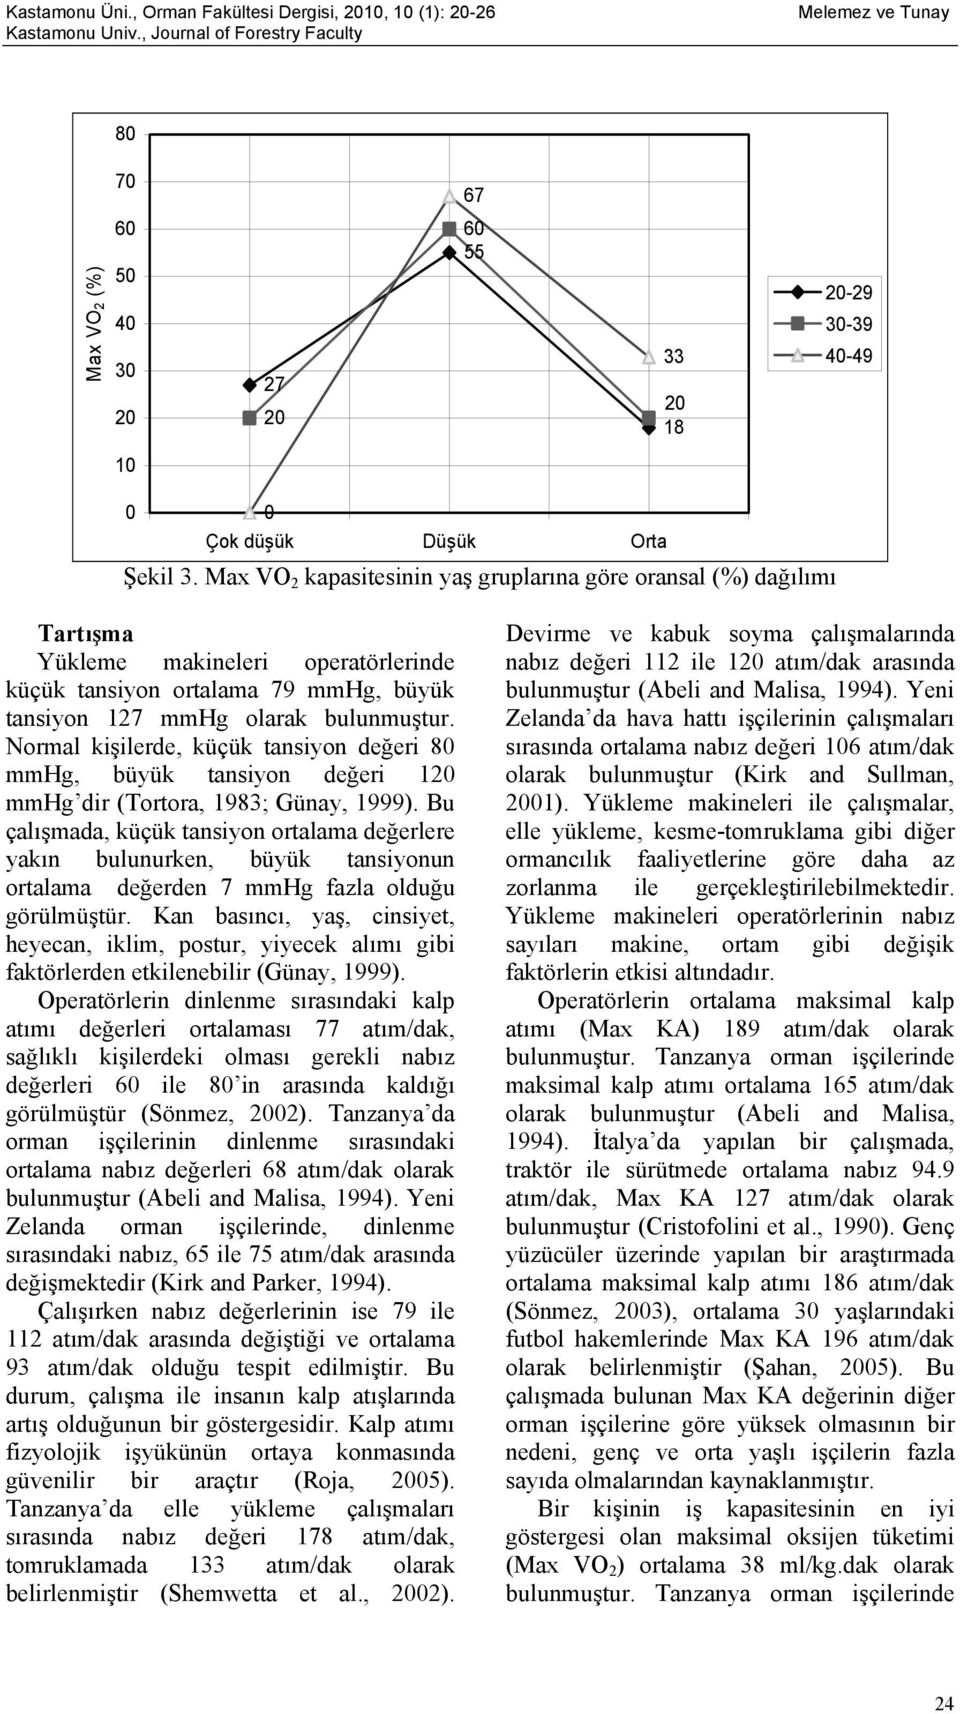 Normal kişilerde, küçük tansiyon değeri 80 mmhg, büyük tansiyon değeri 1 mmhg dir (Tortora, 1983; Günay, 1999).